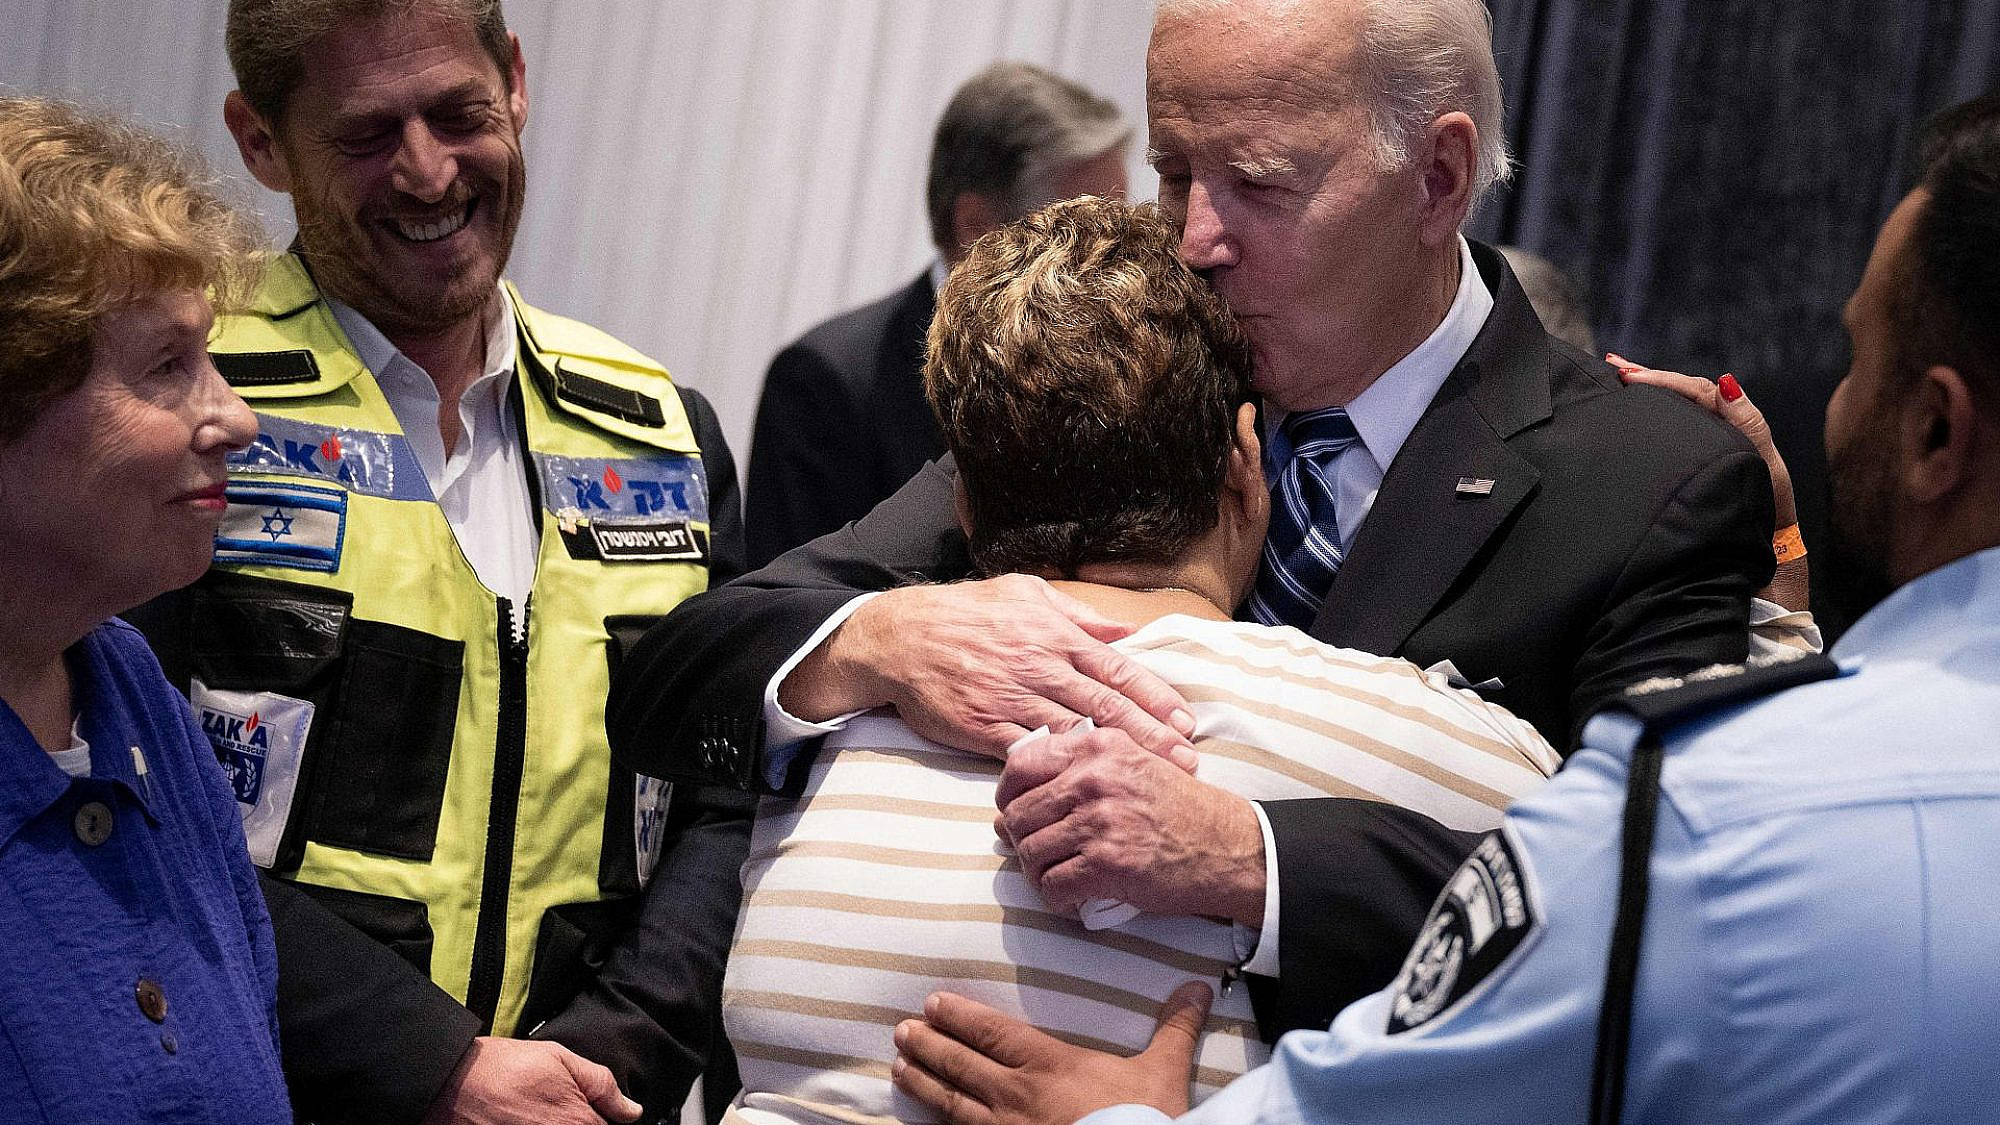 שלום, חבר. ג'ו ביידן מחבק ומנשק את רחל אדרי מאופקים (צילום: ברנדן סמיאלובסקי/AFP/גטי אימג'ס)